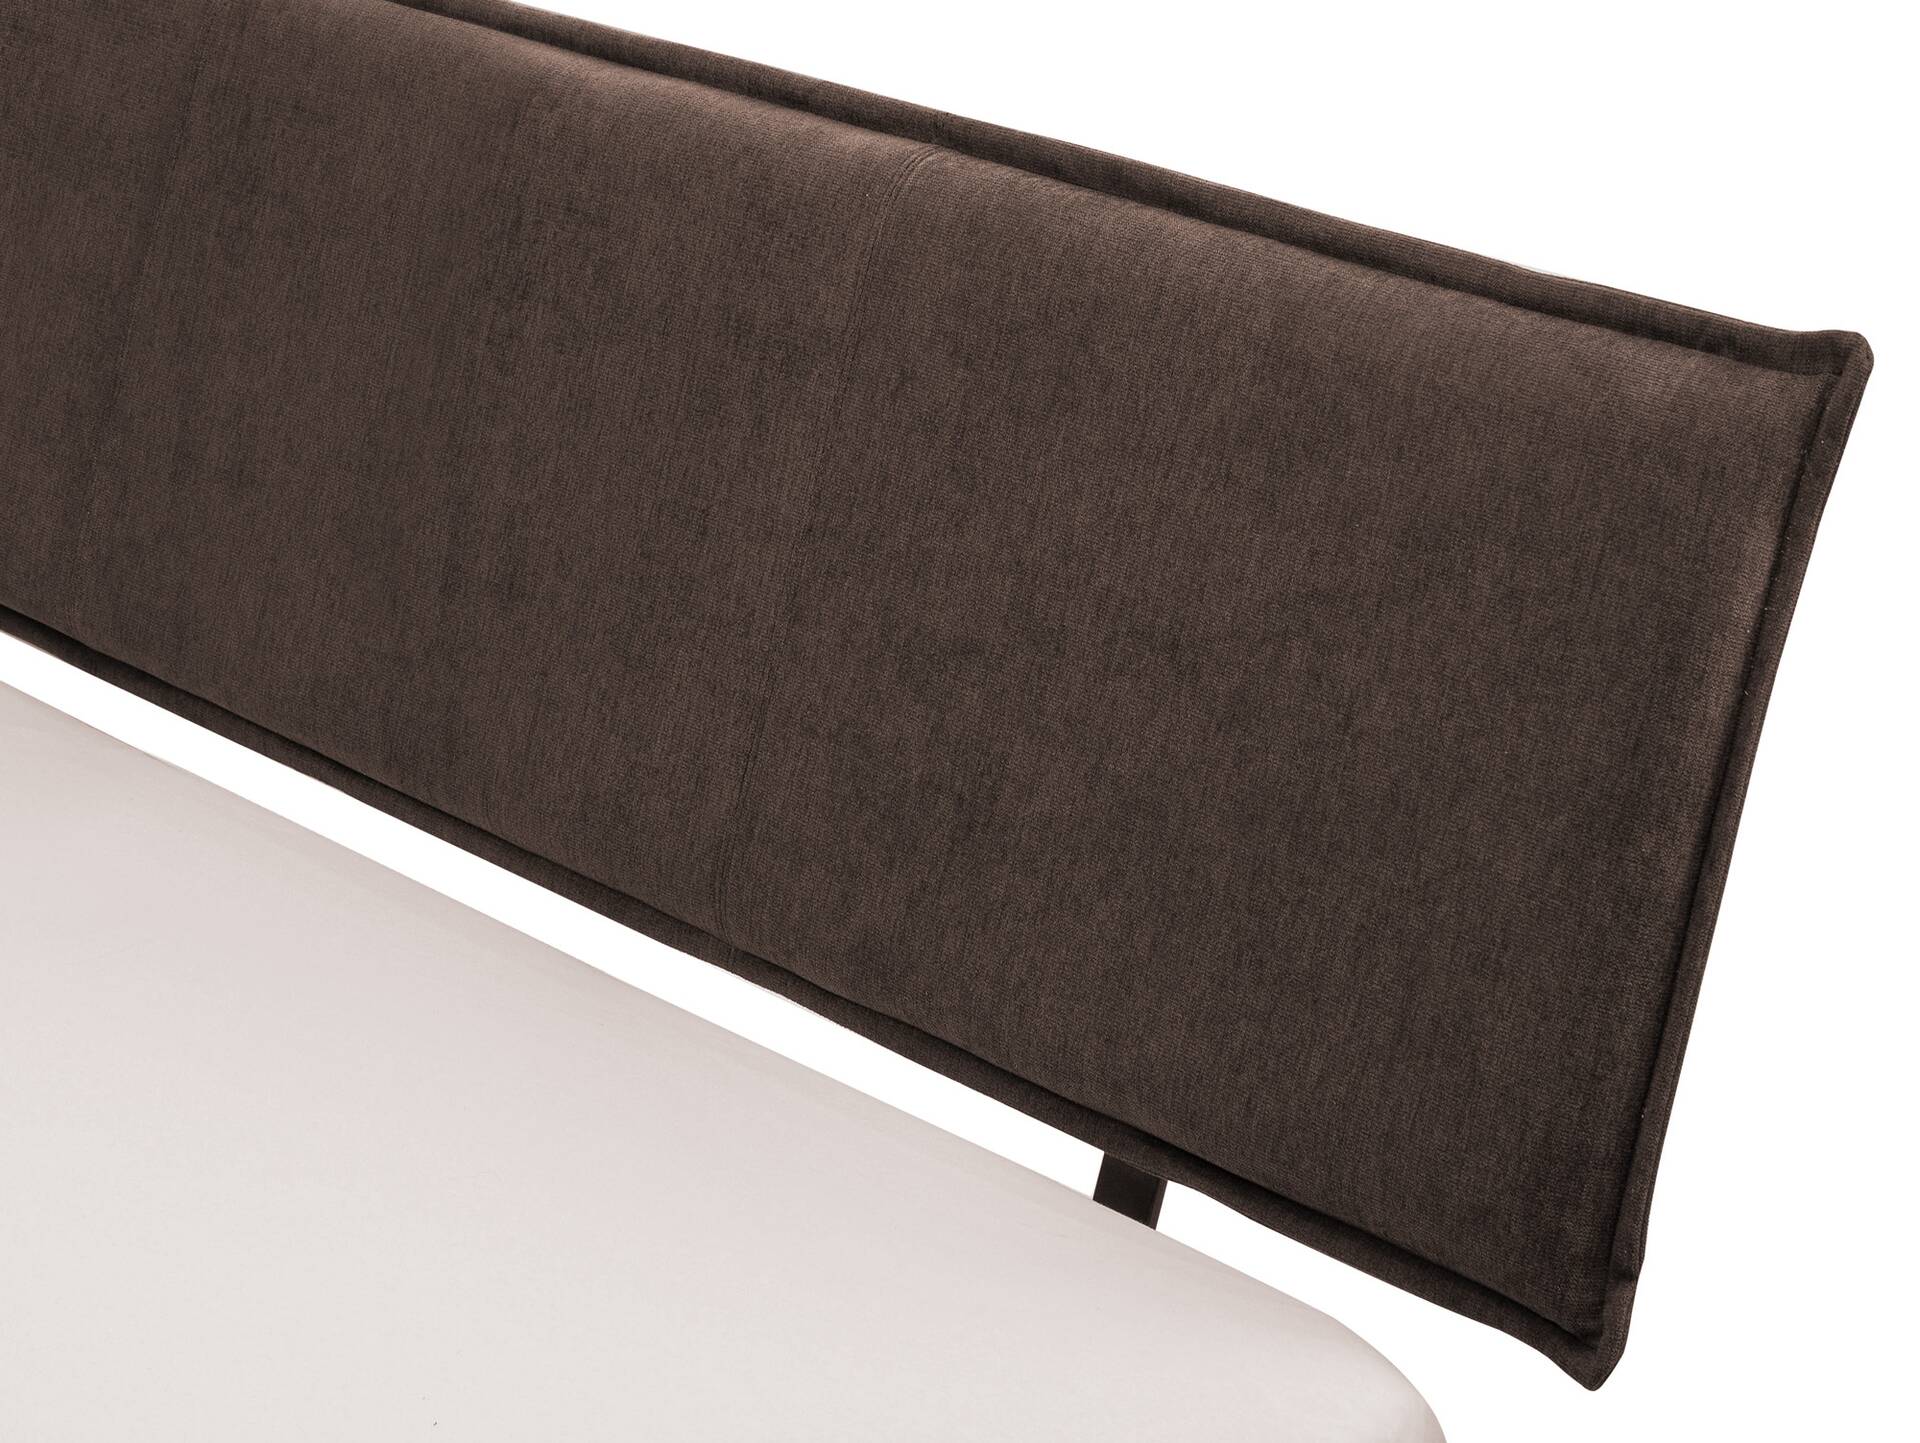 CORDINO 4-Fuß-Bett aus Eiche mit Polster-Kopfteil, Material Massivholz 90 x 220 cm | Eiche lackiert | Stoff Braun | gebürstet